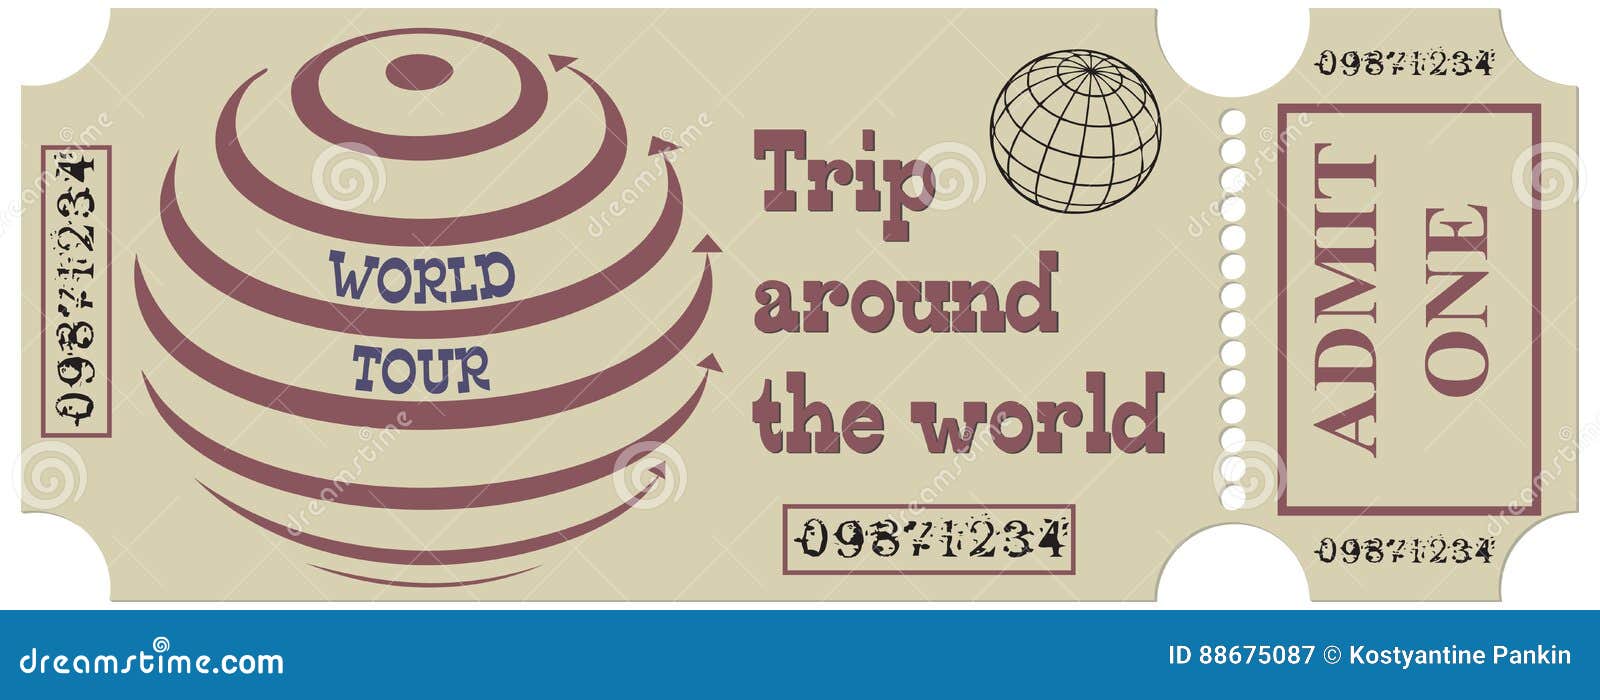 round trip ticket around the world